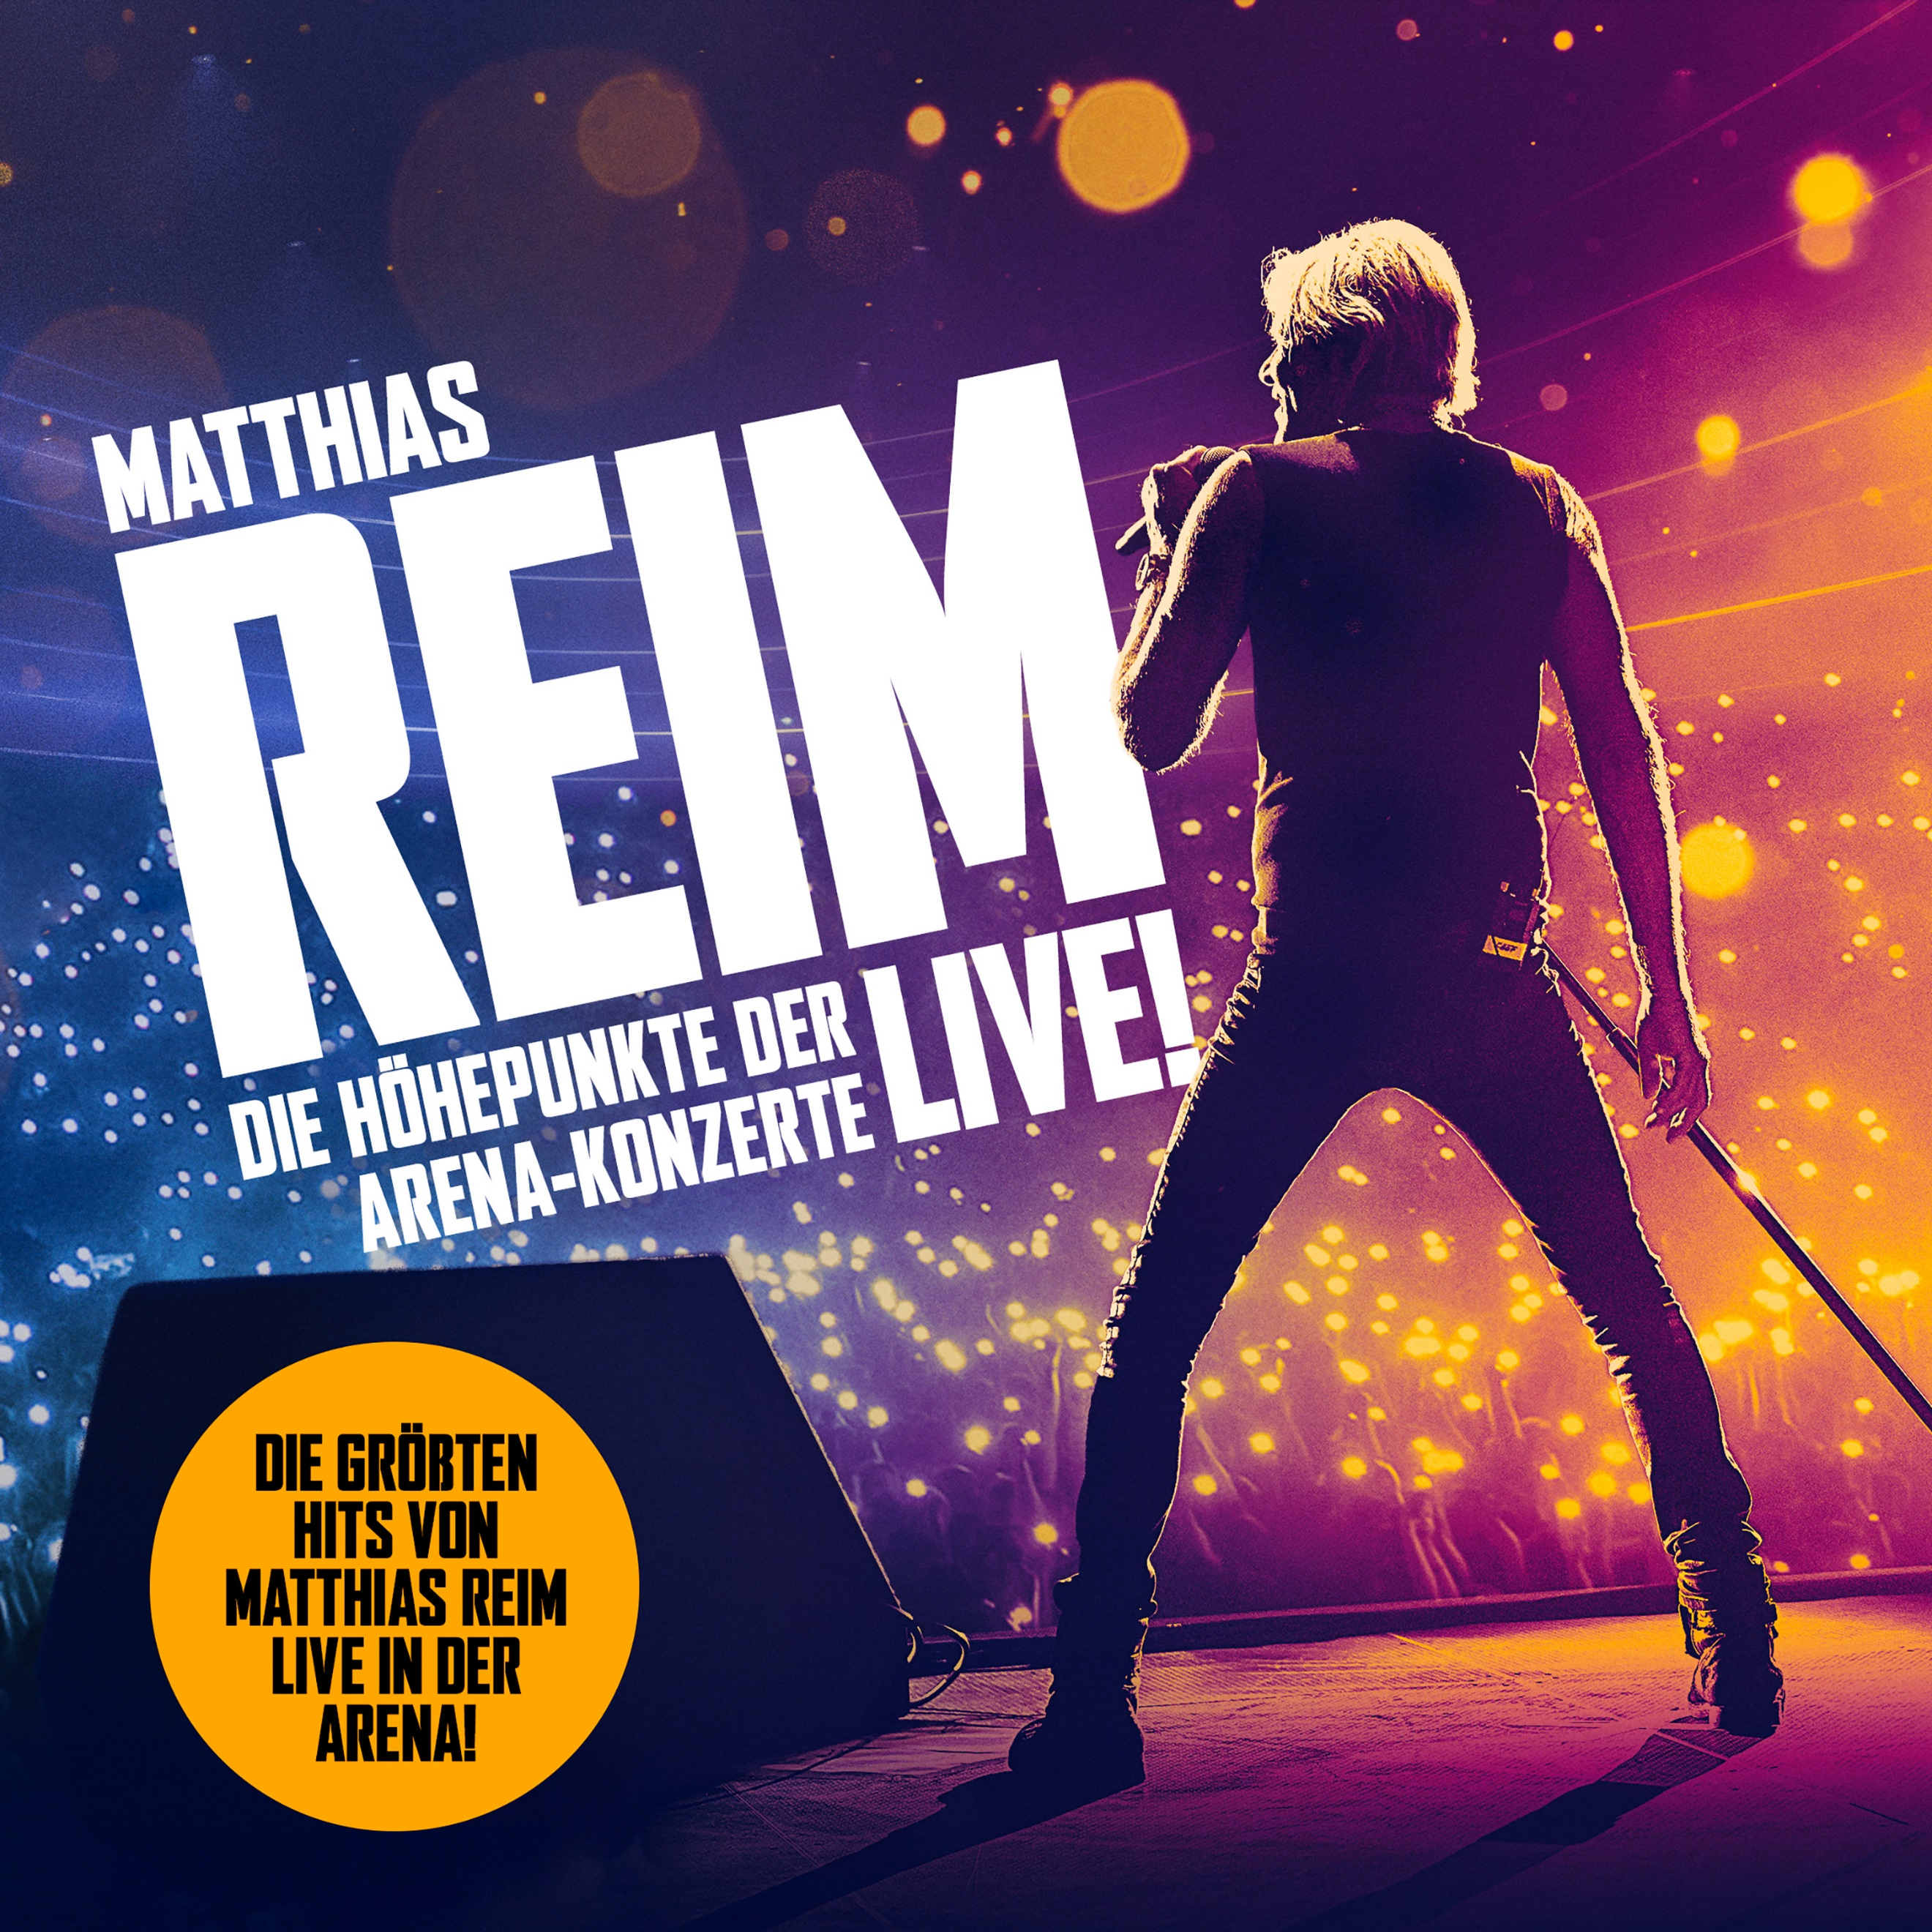 Matthias Reim veröffentlicht heute mit "Die Höhepunkte der Arenakonzerte" ein neues Live Album